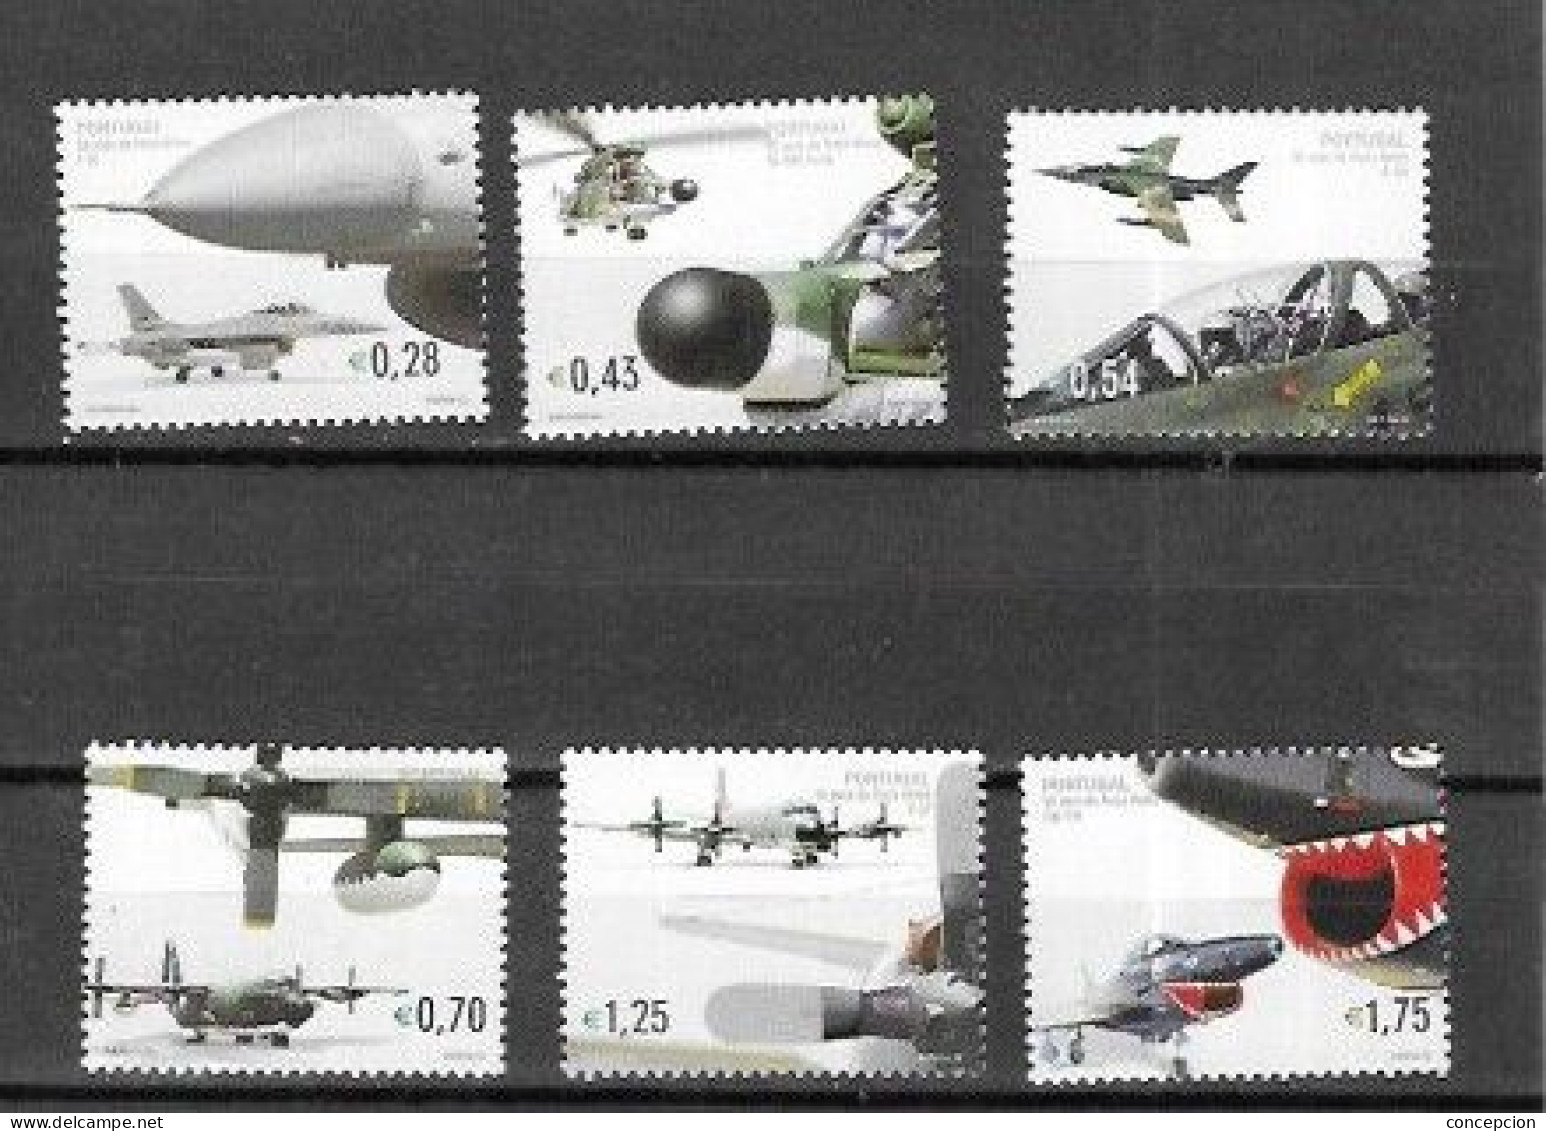 PORTUGALNº 2574 AL 2579 - Unused Stamps